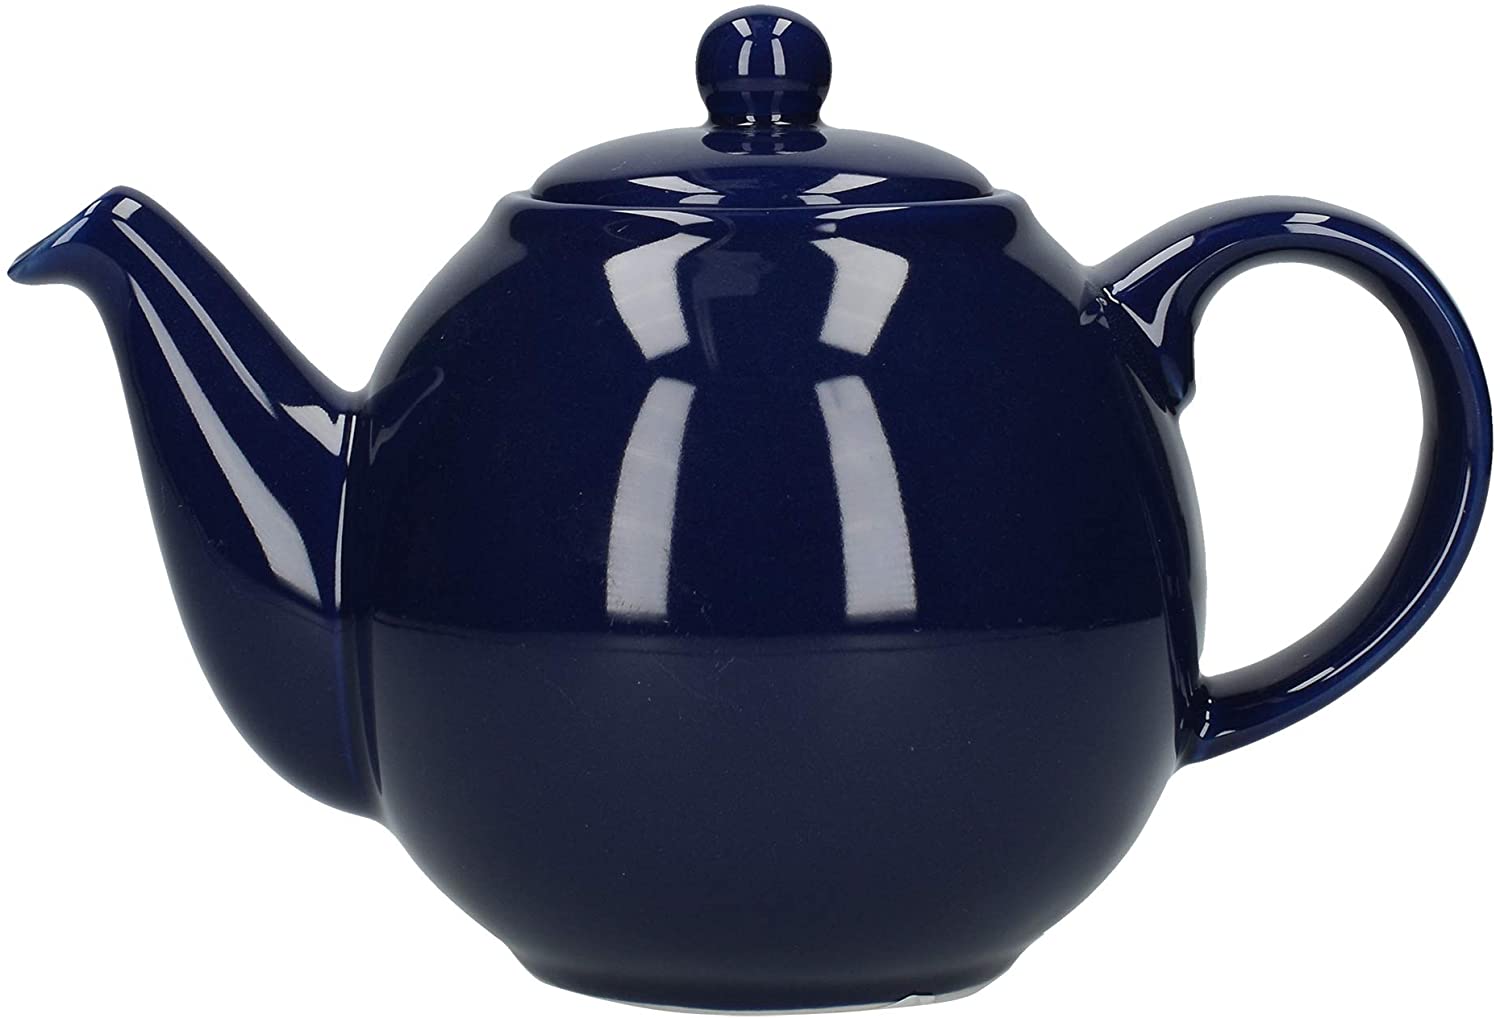 Dexam London Pottery Co 2 Cup Round Teapot, Cobalt Blue